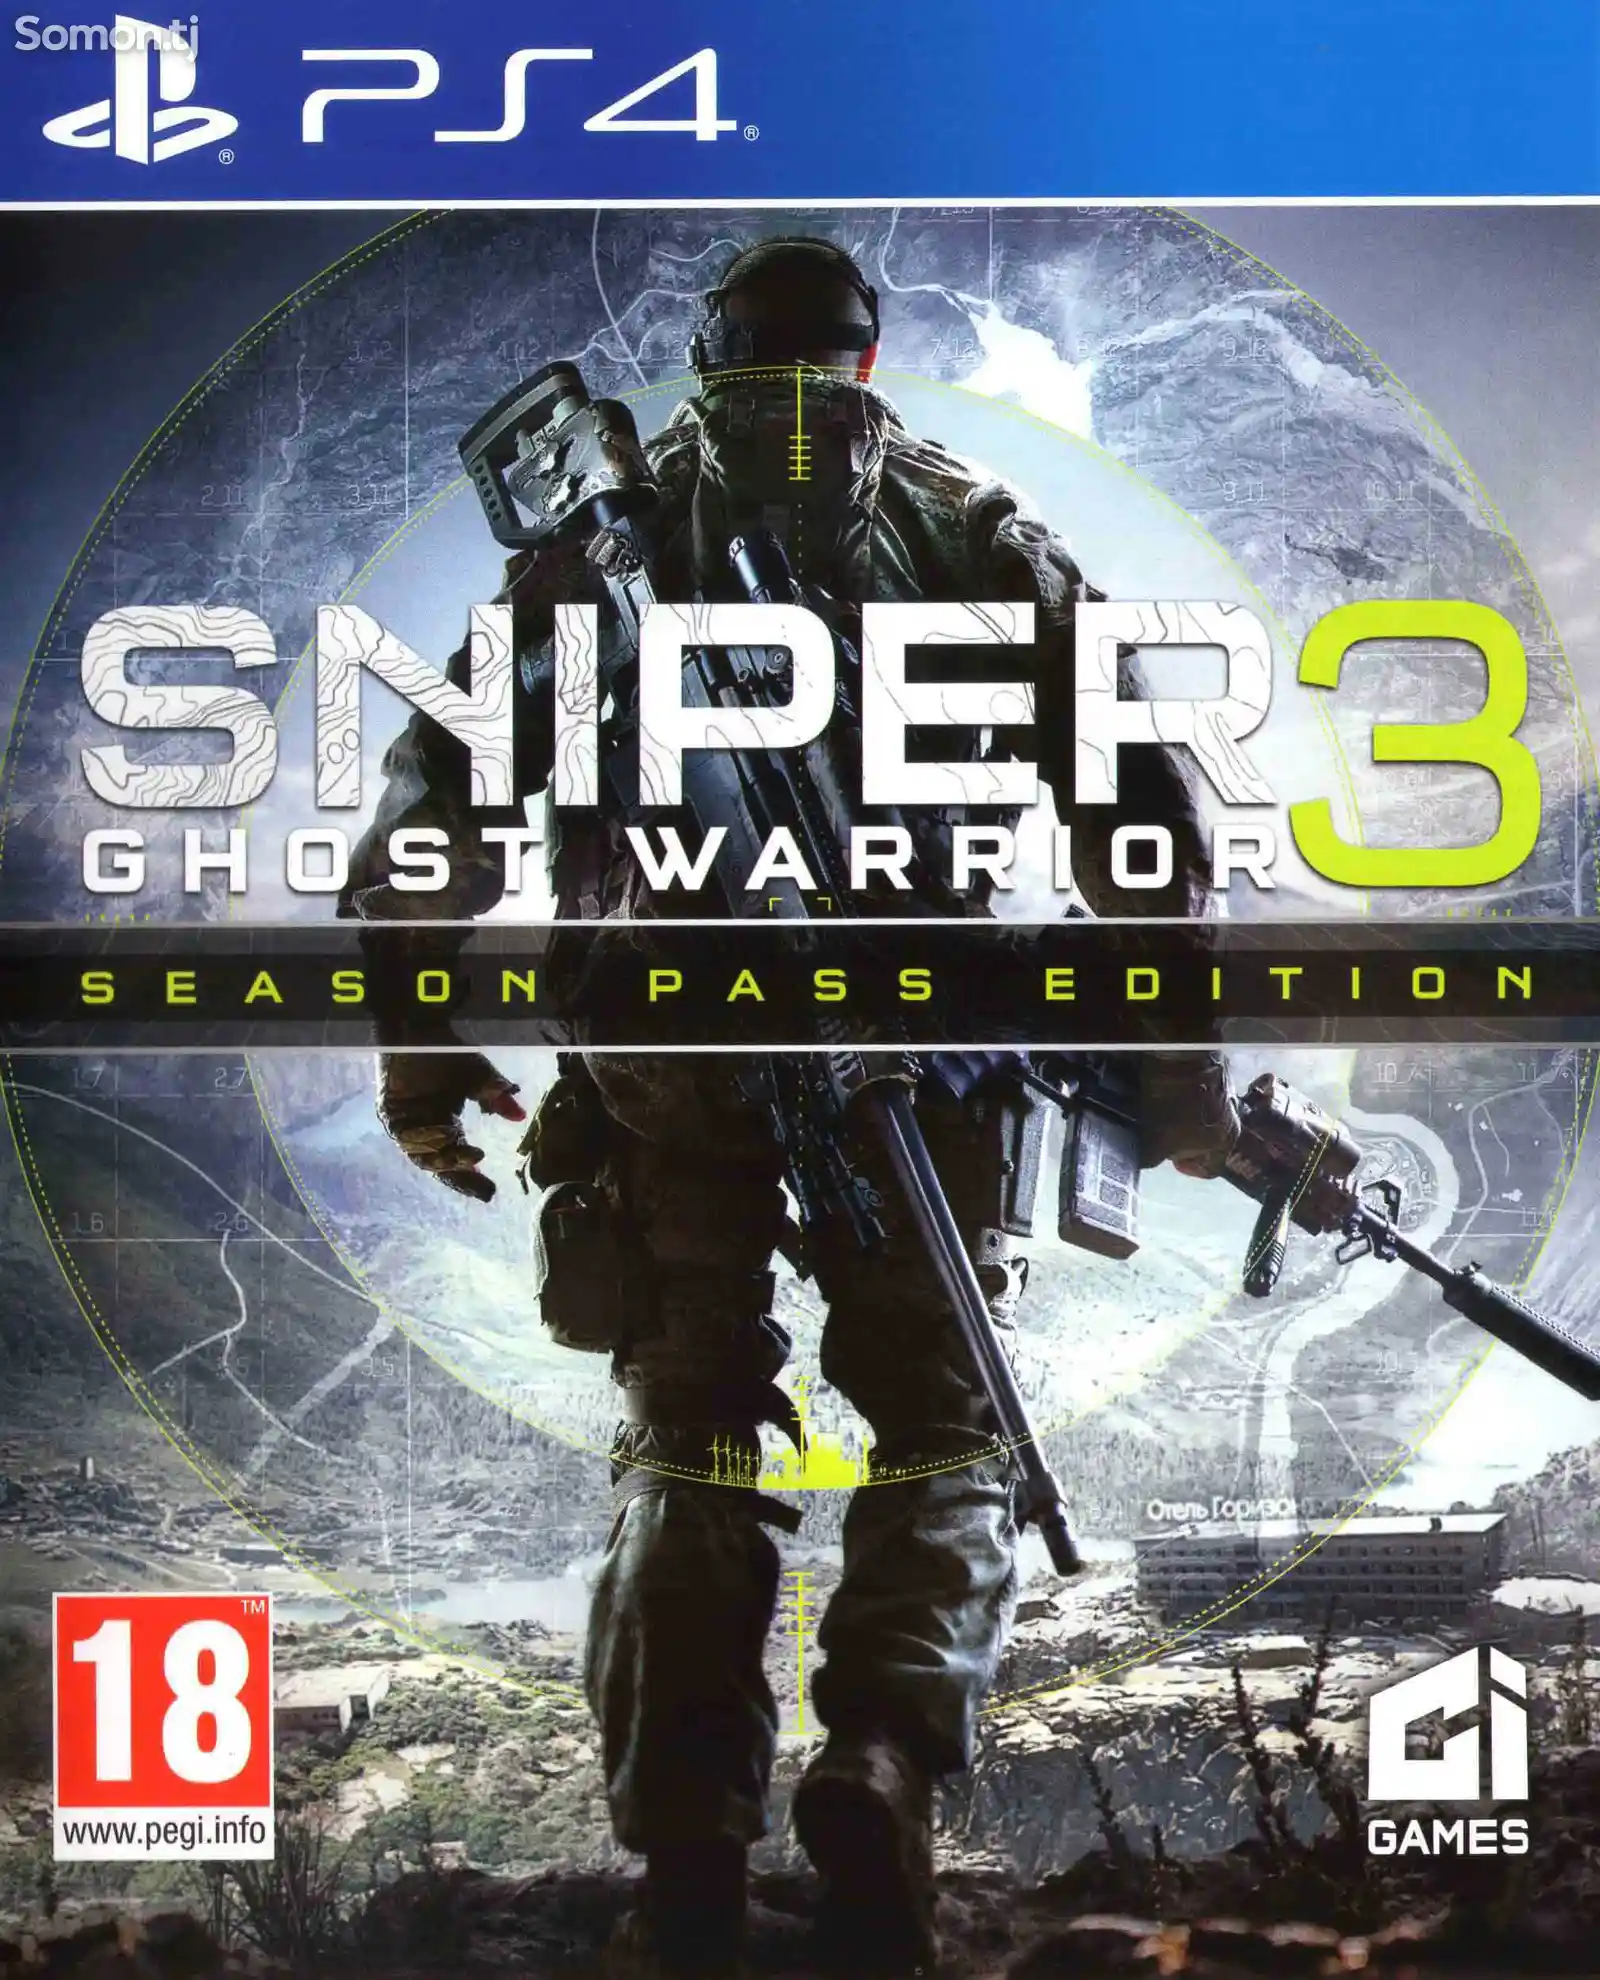 Игра Sniper elite 4 для PS-4 / 5.05 / 6.72 / 7.02 / 7.55 / 9.00 /